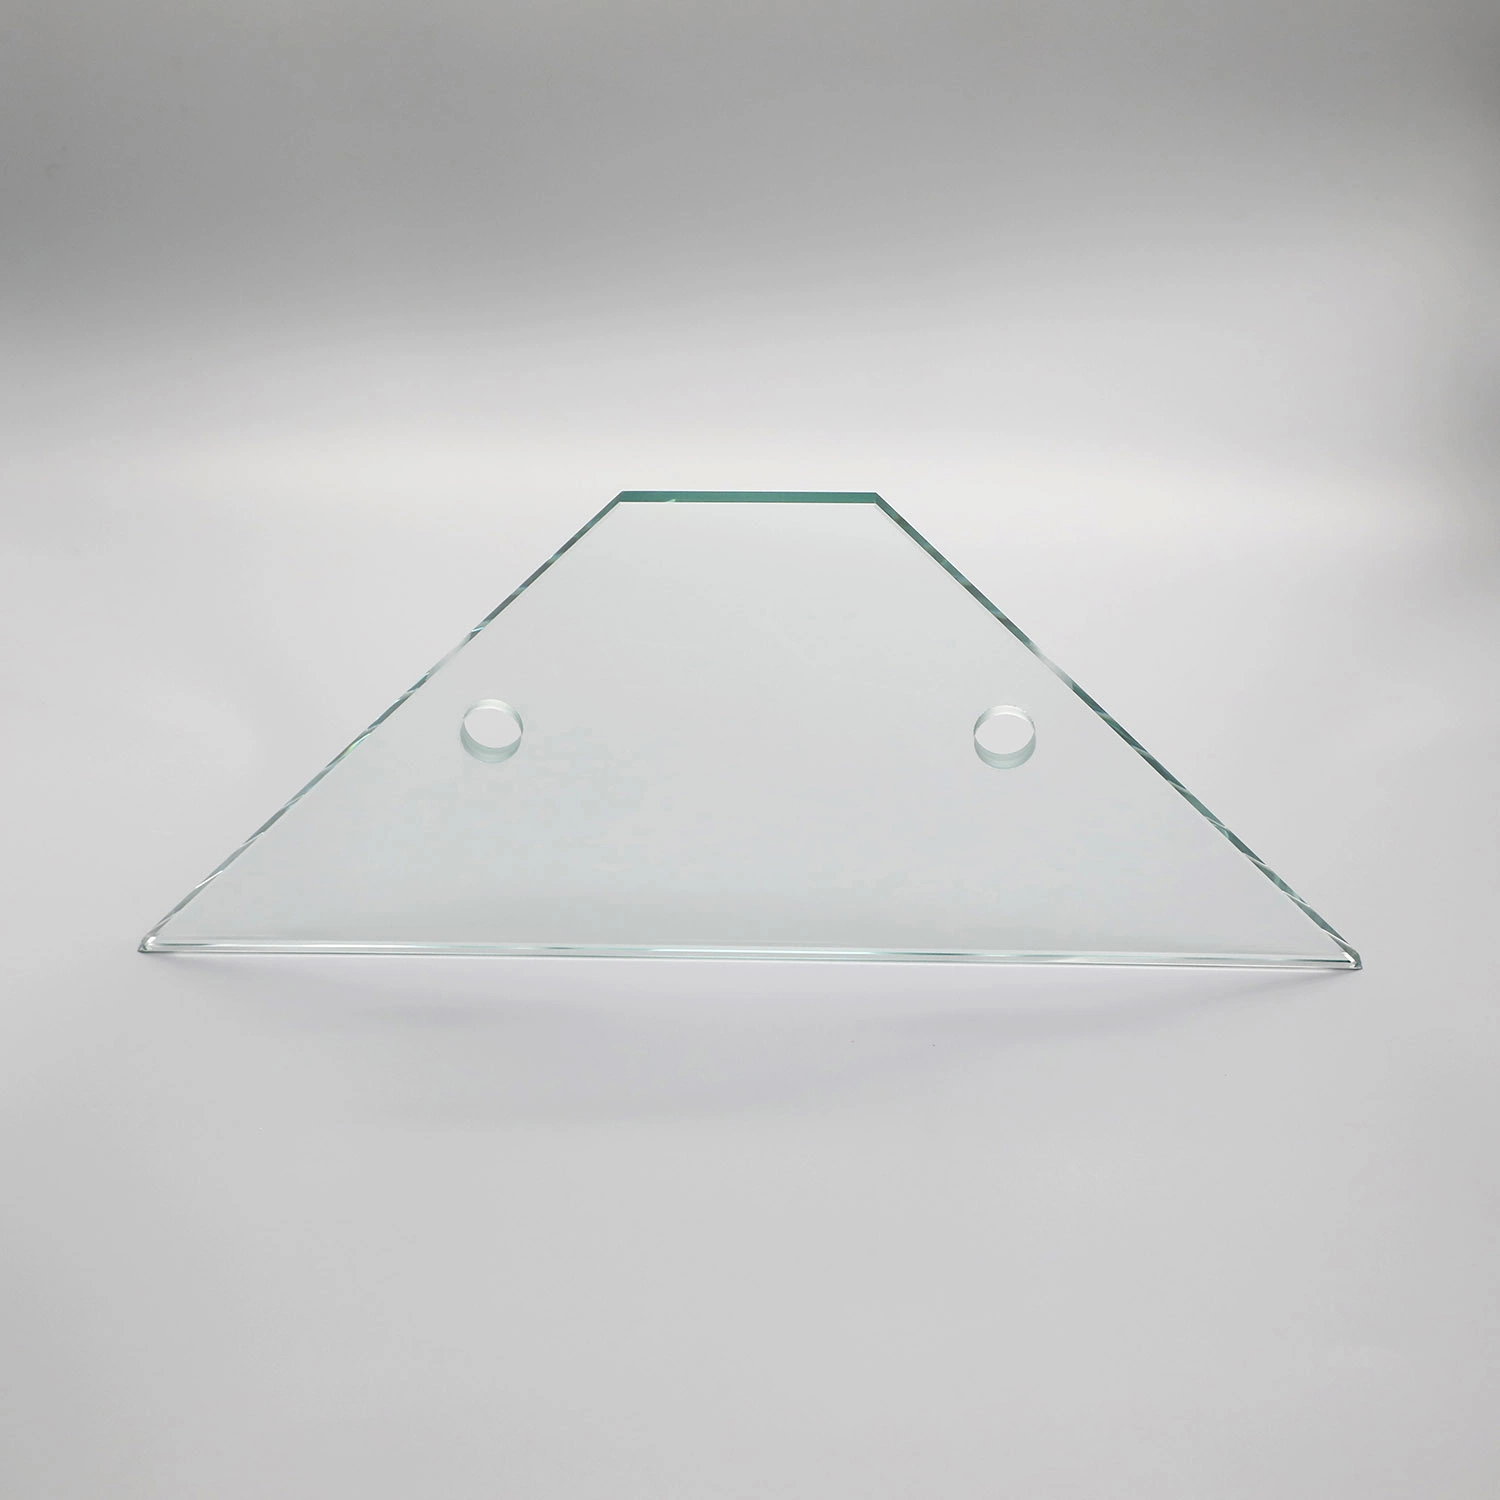 8mm de cristal templado transparente/cobertizo de vidrio endurecido para oficina o de la puerta del hotel mobiliario de la ventana, puerta, Baranda de vidrio, muebles, cortinas de cristal de la pared